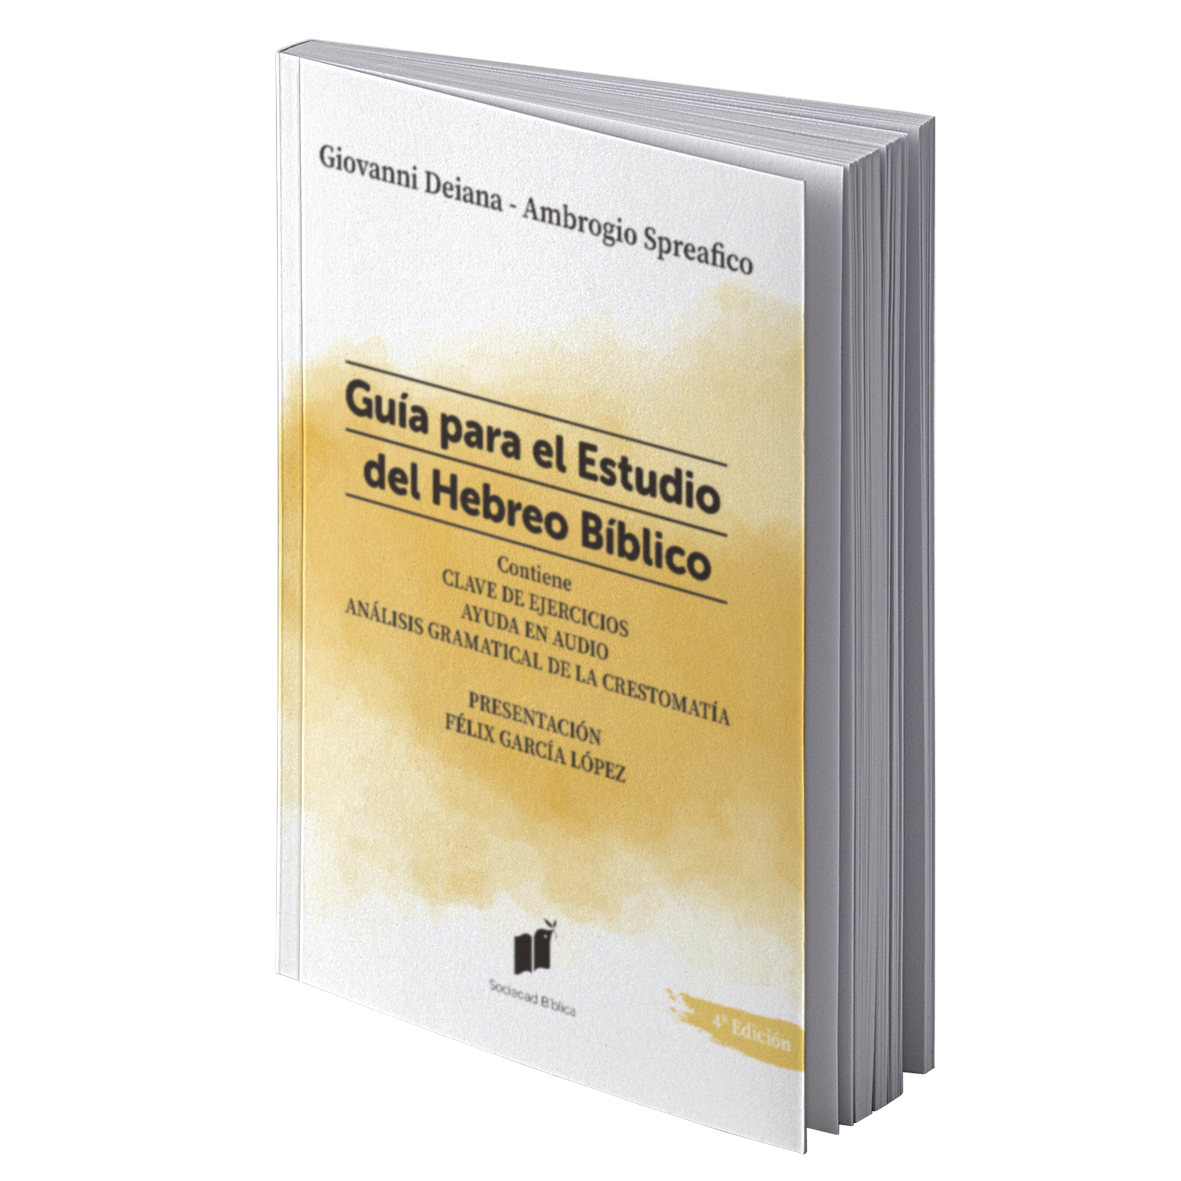 GUIA PARA EL ESTUDIO DEL HEBREO BÍBLICO